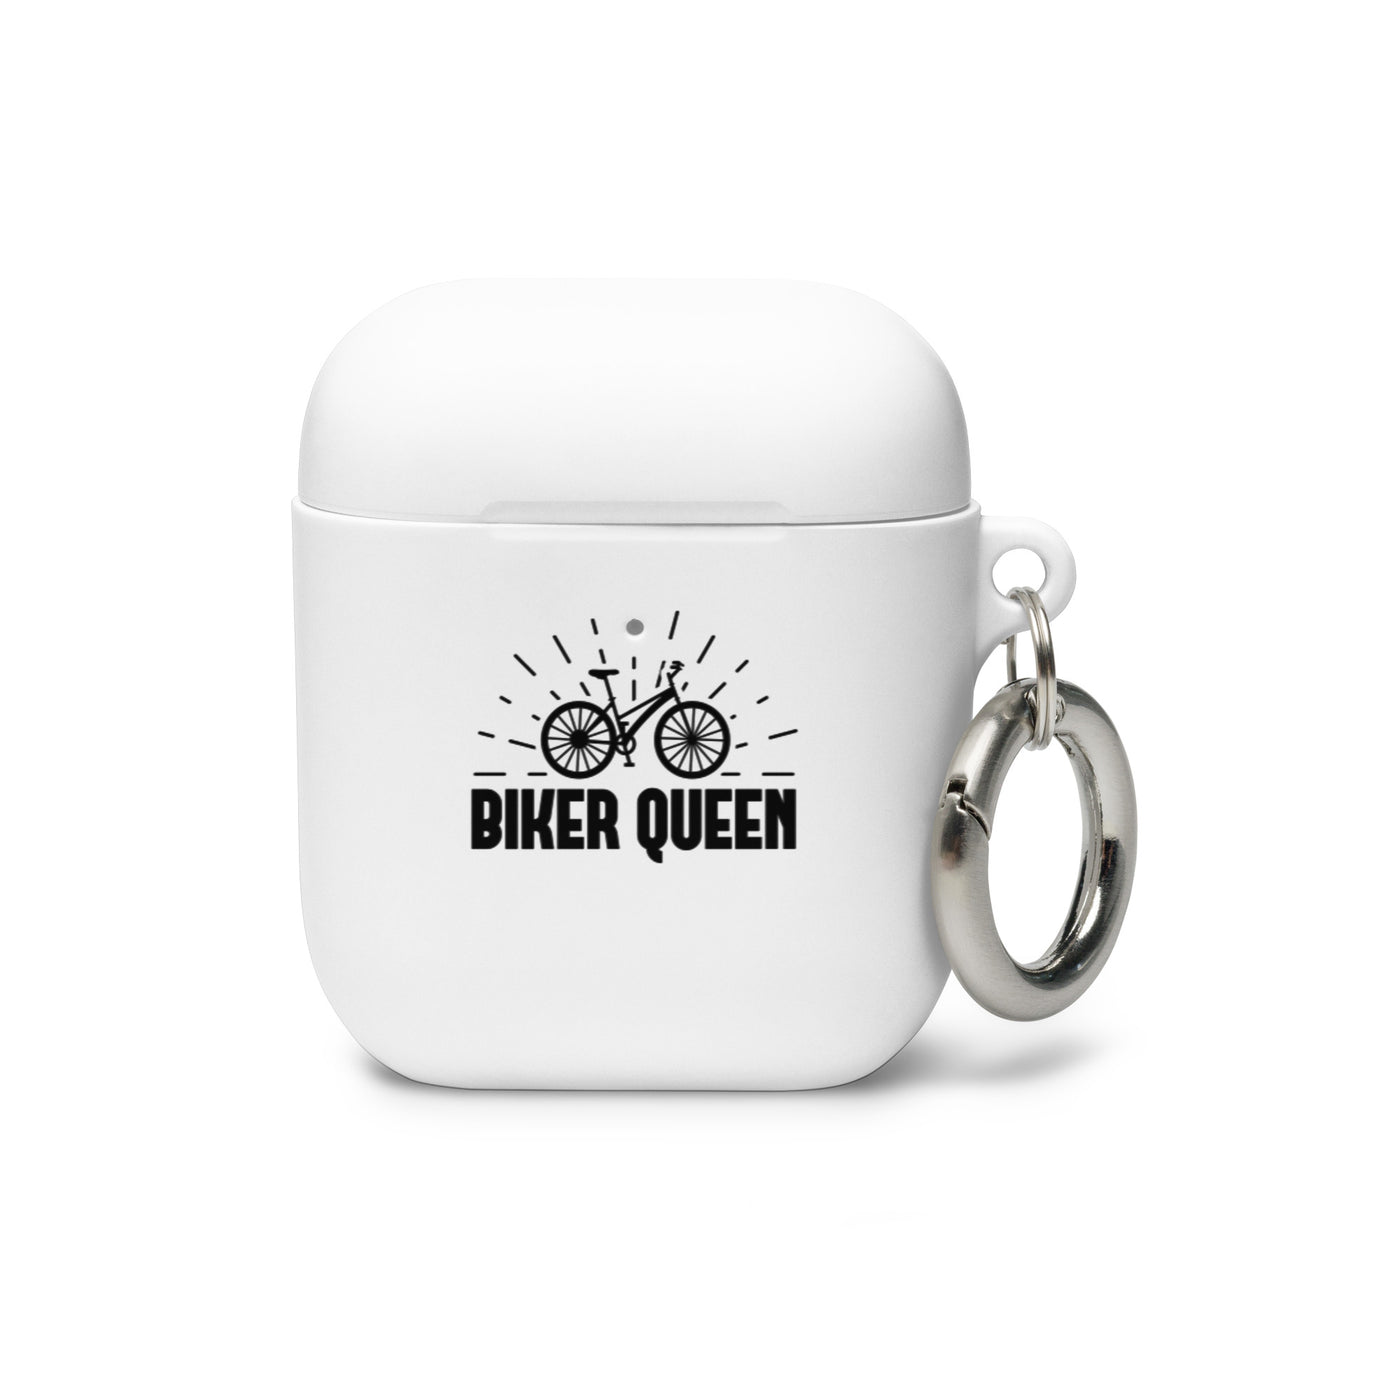 Biker Queen - AirPods Case fahrrad Weiß AirPods